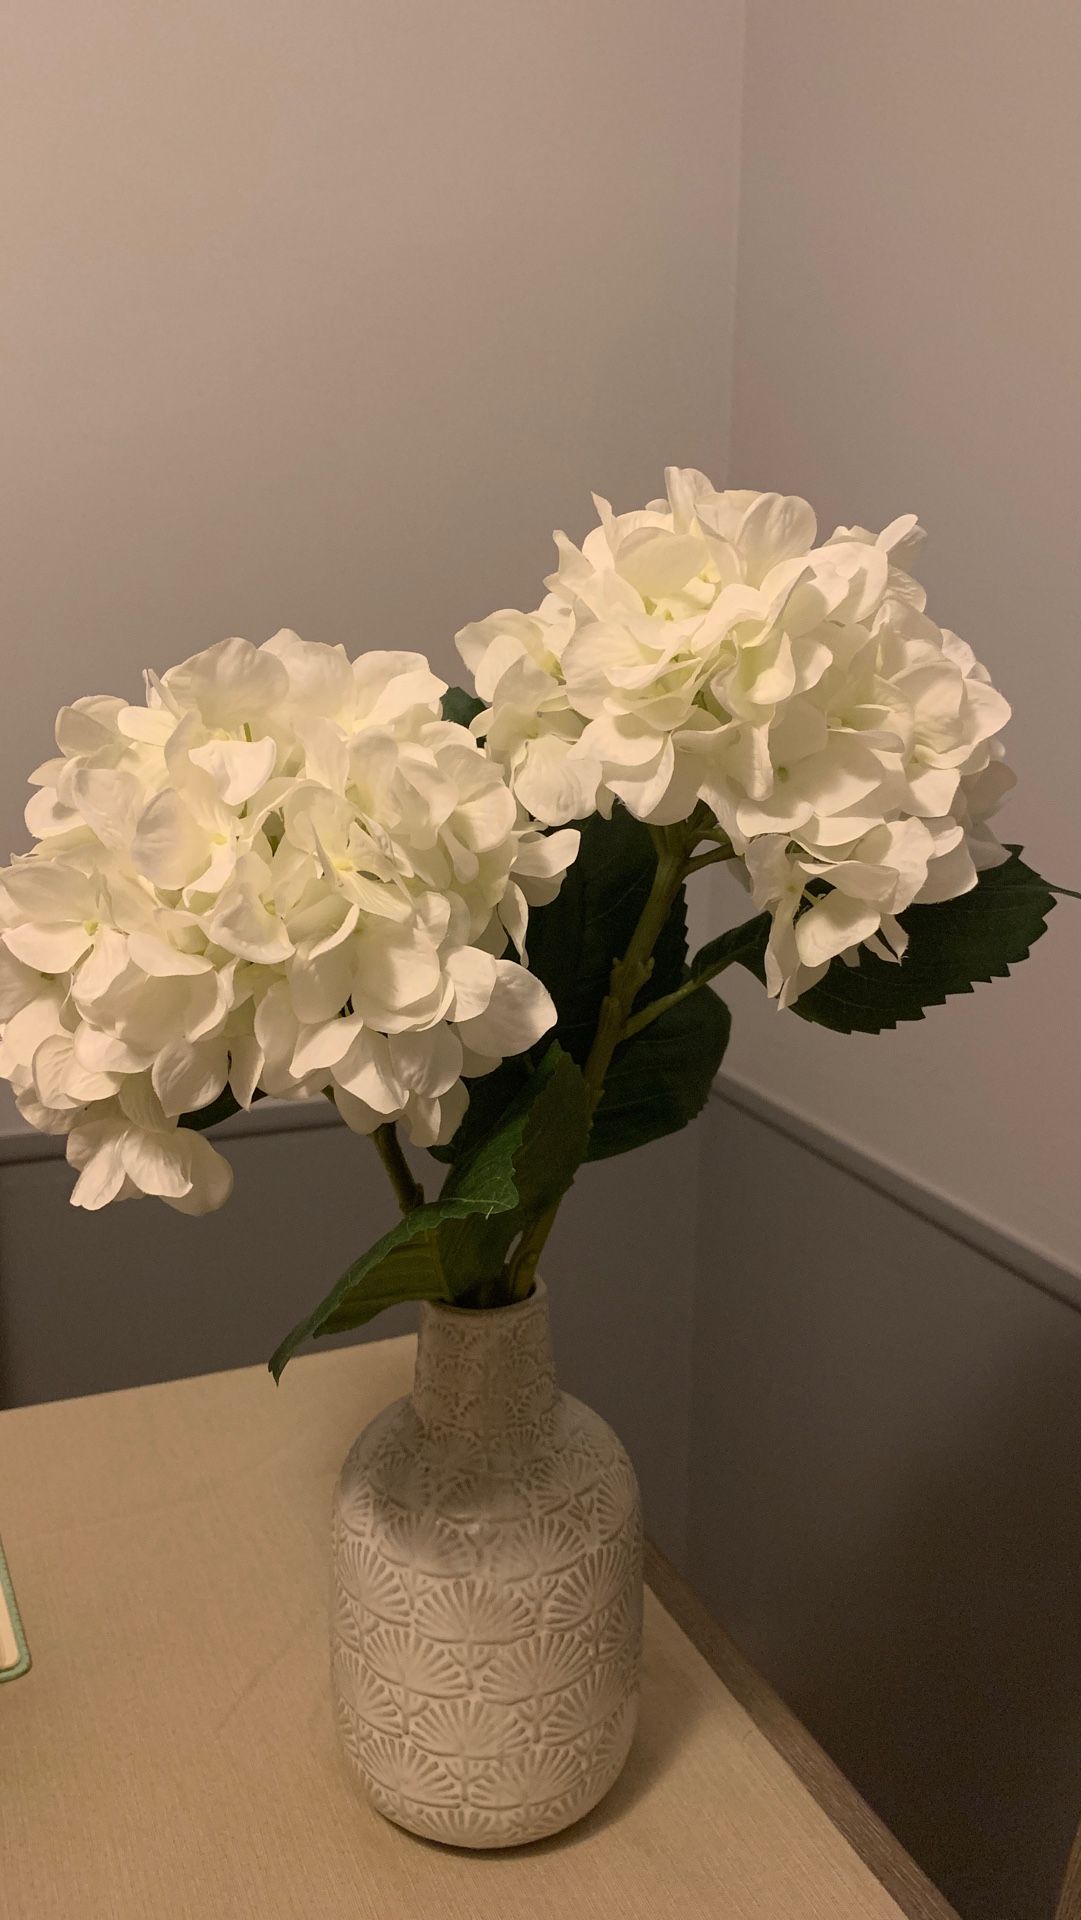 Gardenia Flower arrangement with vase